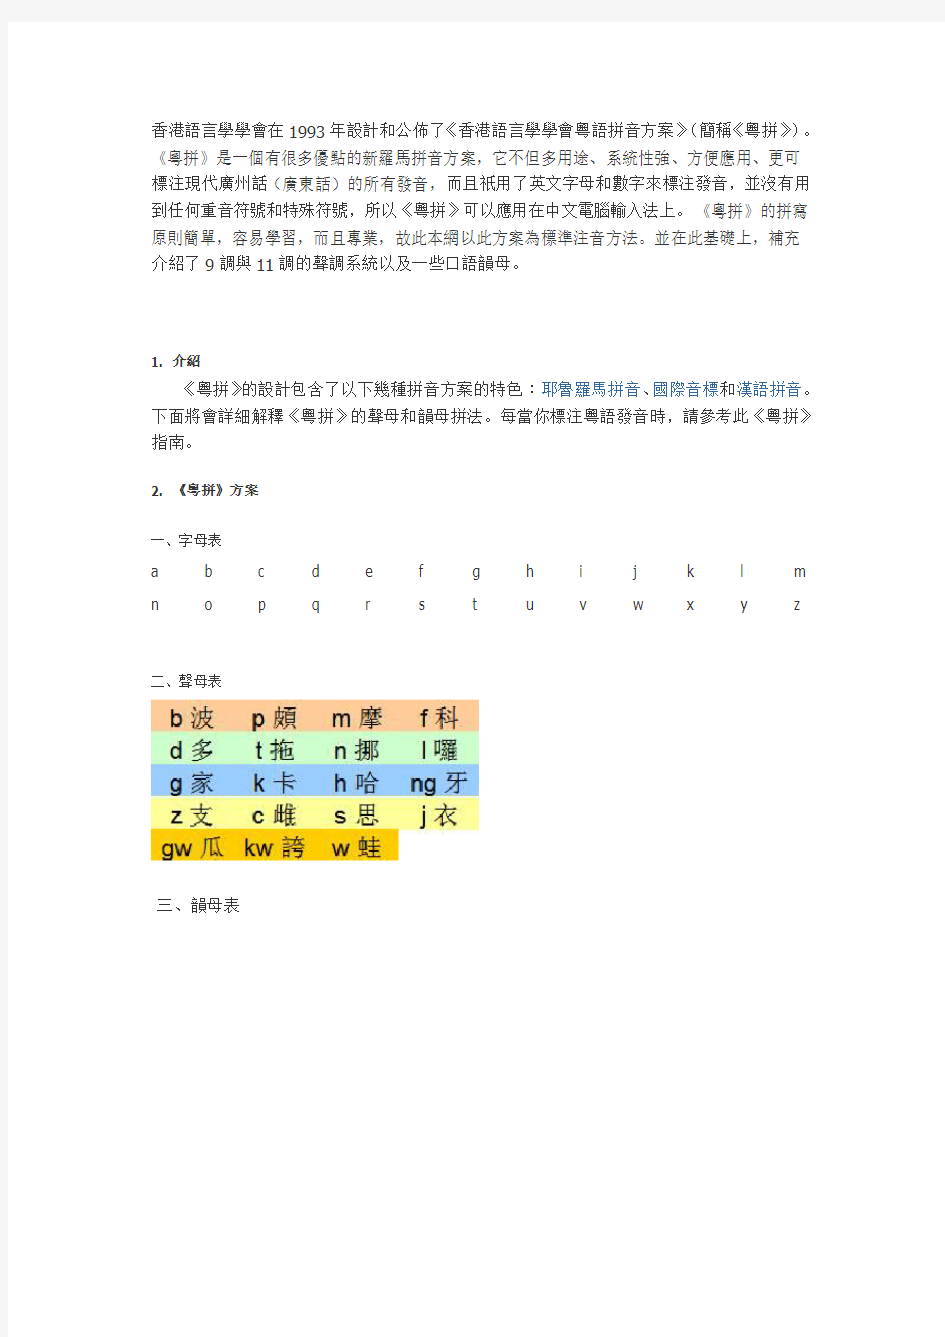 香港语言学学会粤语拼音方案